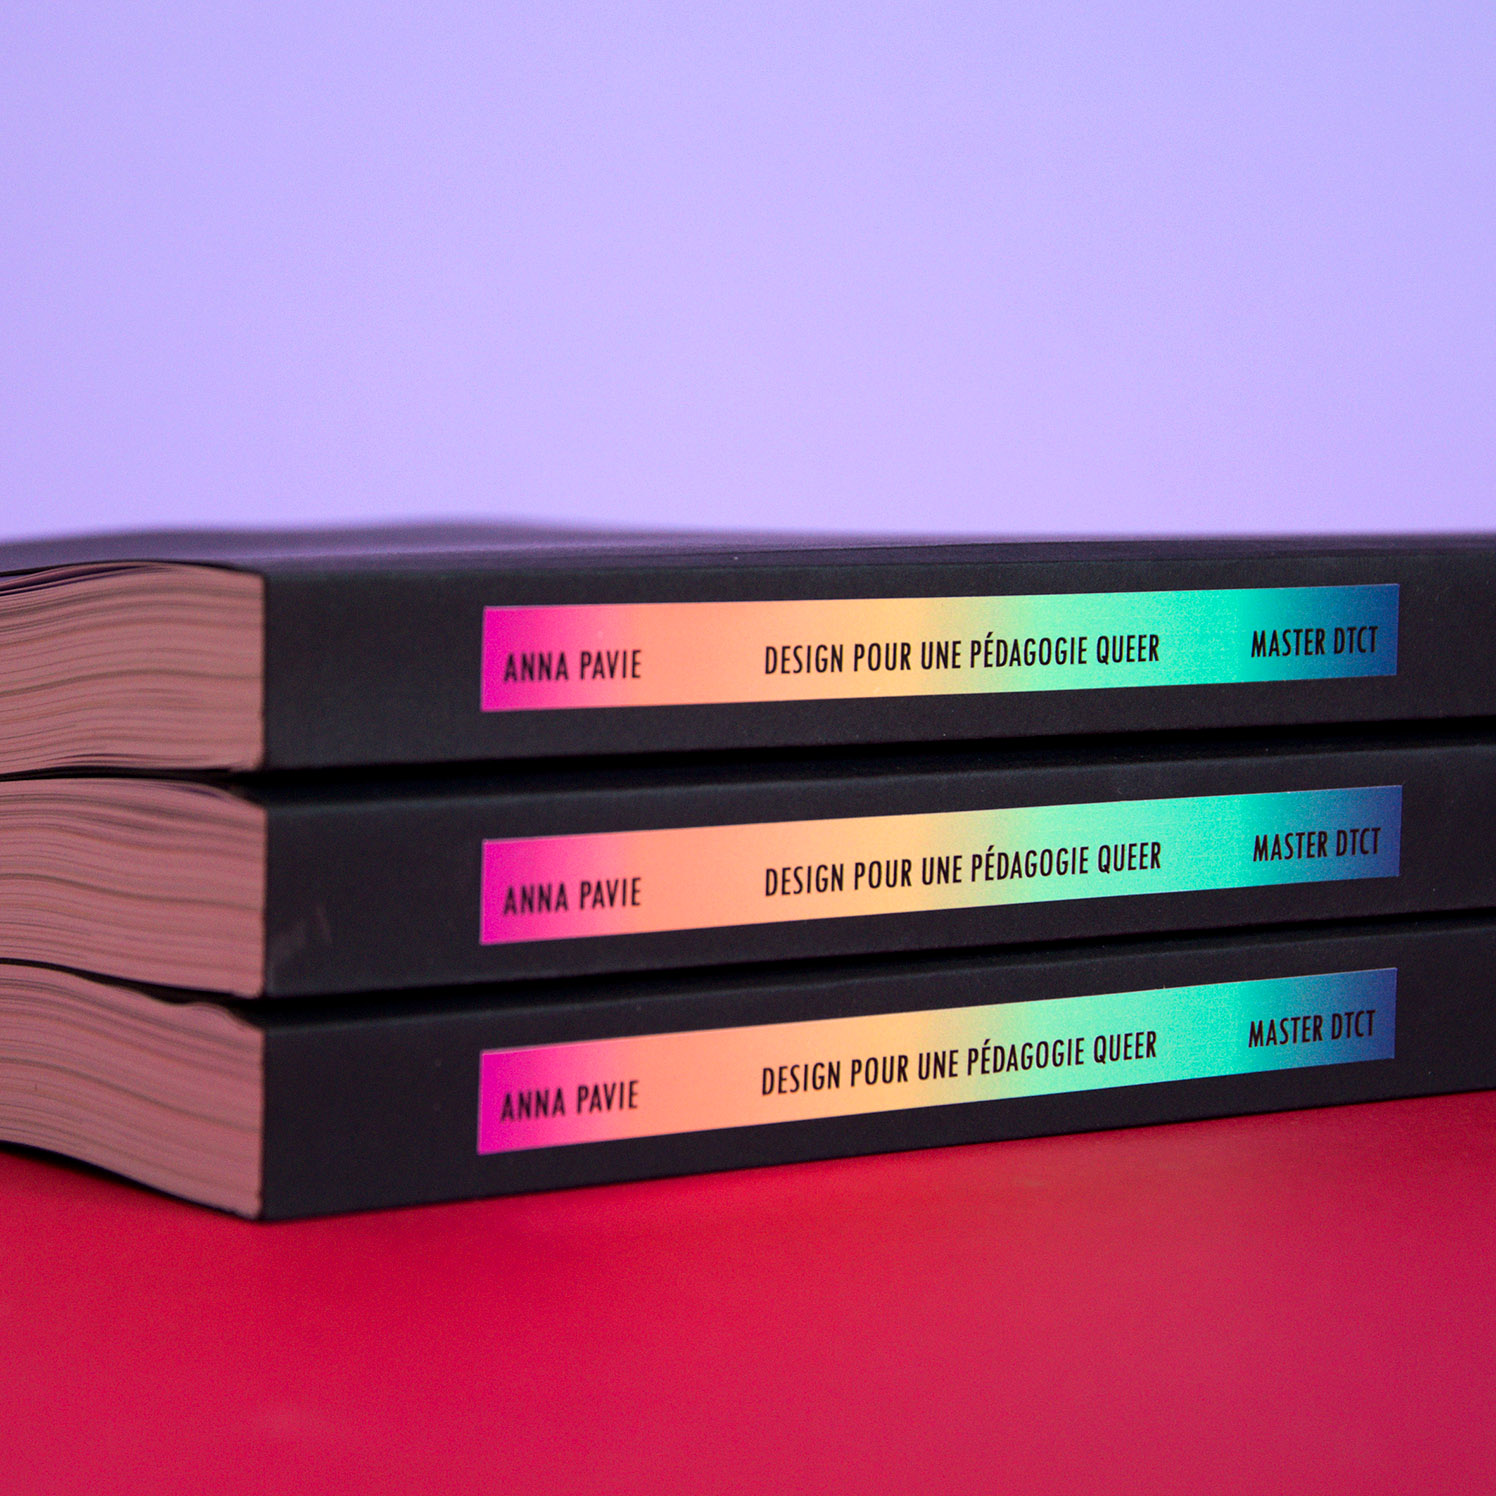 MÃ©moire Design pour une pÃ©dagogie queer (Anna Pavie) : dos de l'ouvrage